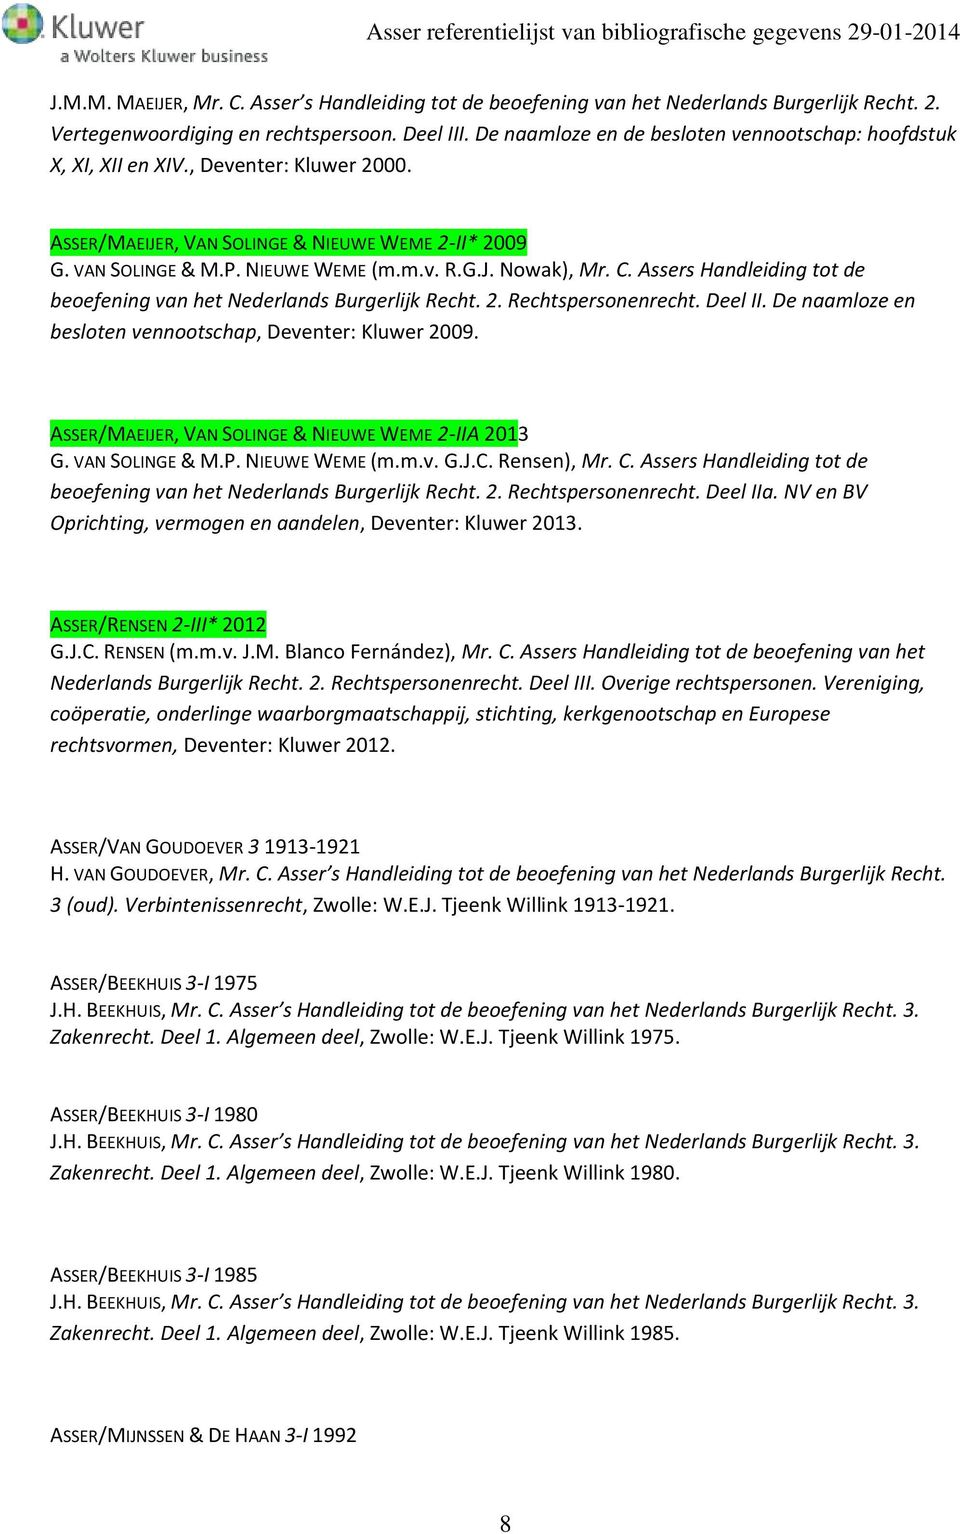 C. Assers Handleiding tot de beoefening van het Nederlands Burgerlijk Recht. 2. Rechtspersonenrecht. Deel II. De naamloze en besloten vennootschap, Deventer: Kluwer 2009.